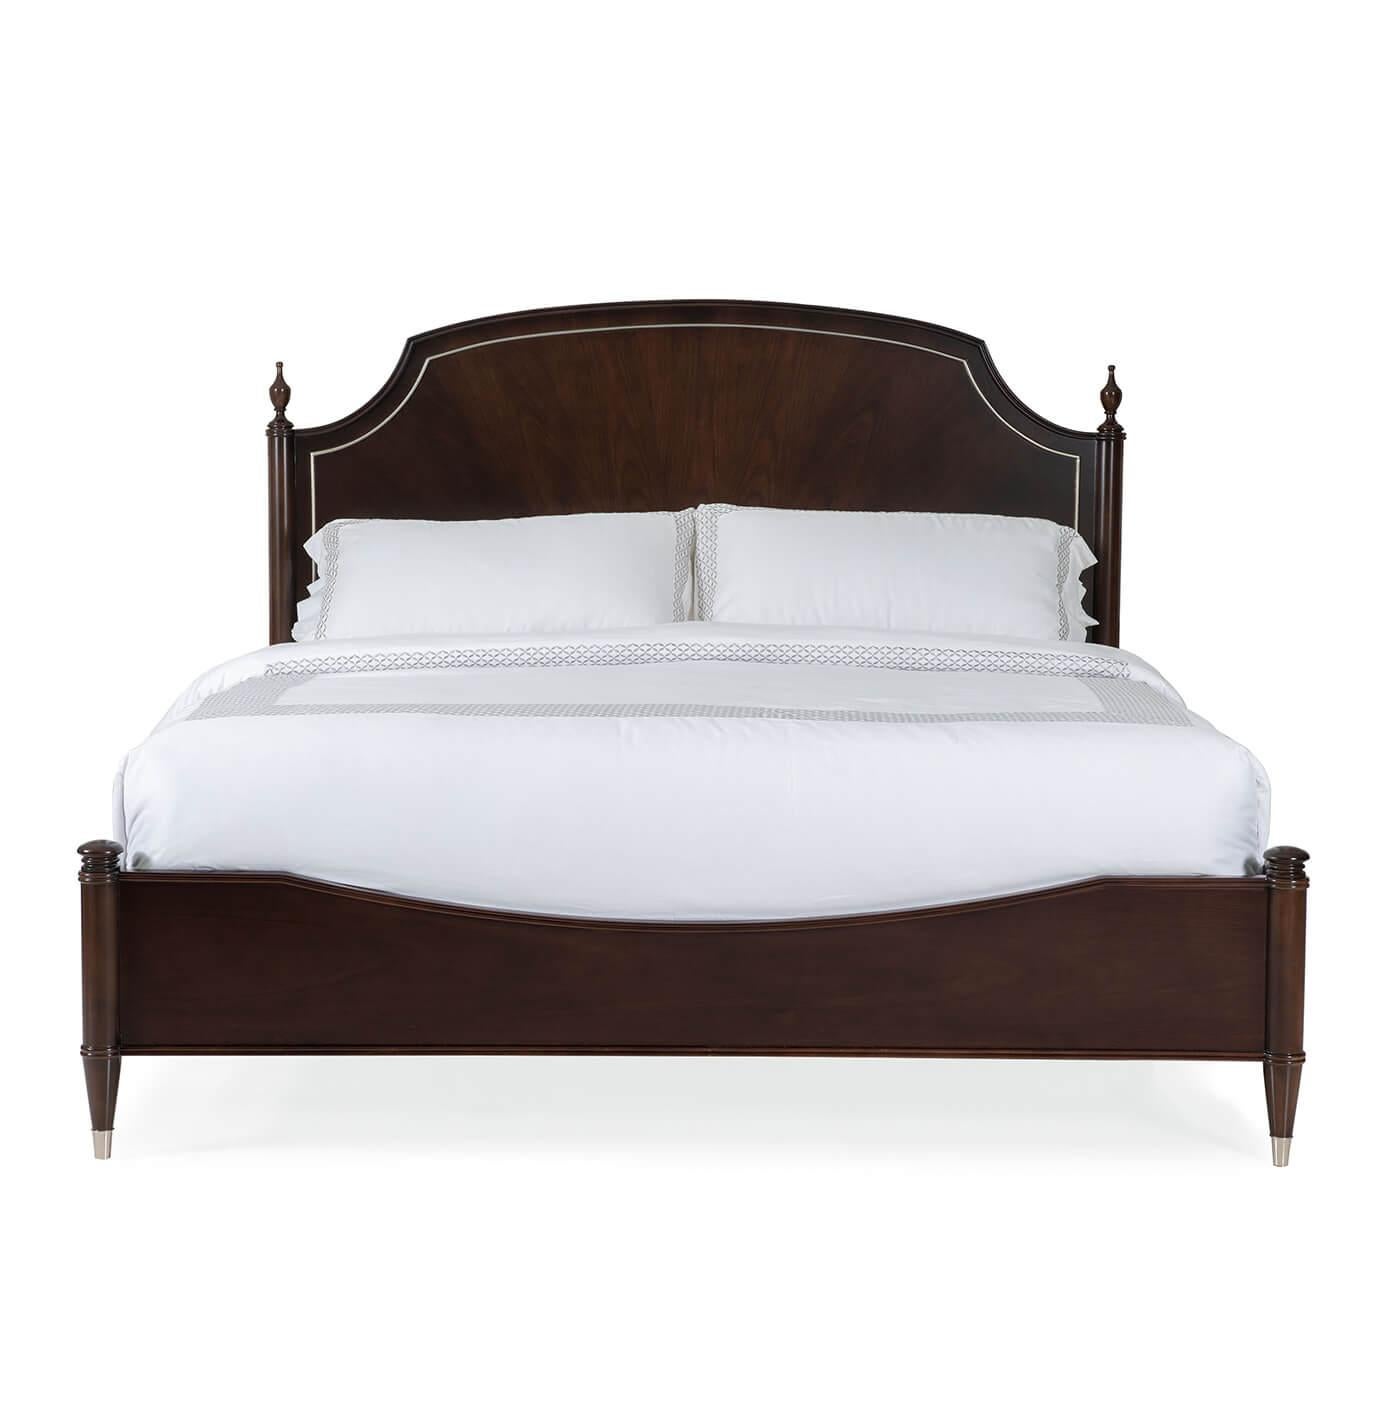 Ein Kingsize-Bett im europäischen Stil mit einem Kopfteil im historischen Stil. Dieses Bett hat ein modernes, klassisches Design, das von einer Neo-Classic-Antiquität aus dem 18. Jahrhundert inspiriert ist, und ist mit einem schönen